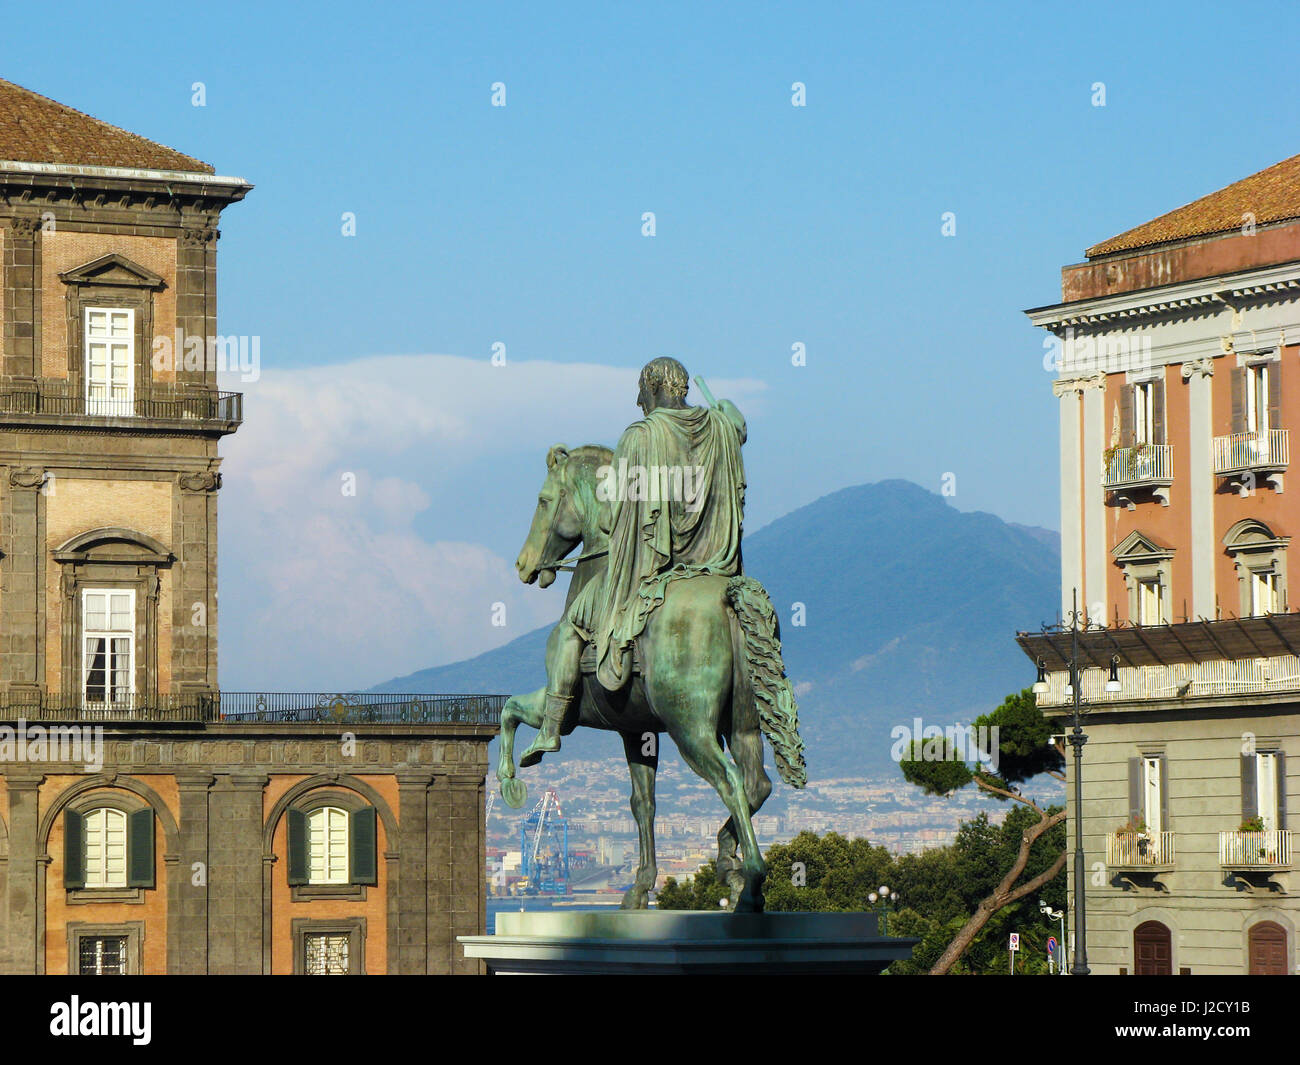 Piazza del Plebiscito, Naples - Statua di Carlo III di Spagna (Carlo Sebastiano di Borbone) with part of the Vesuvius volcano in the background Stock Photo